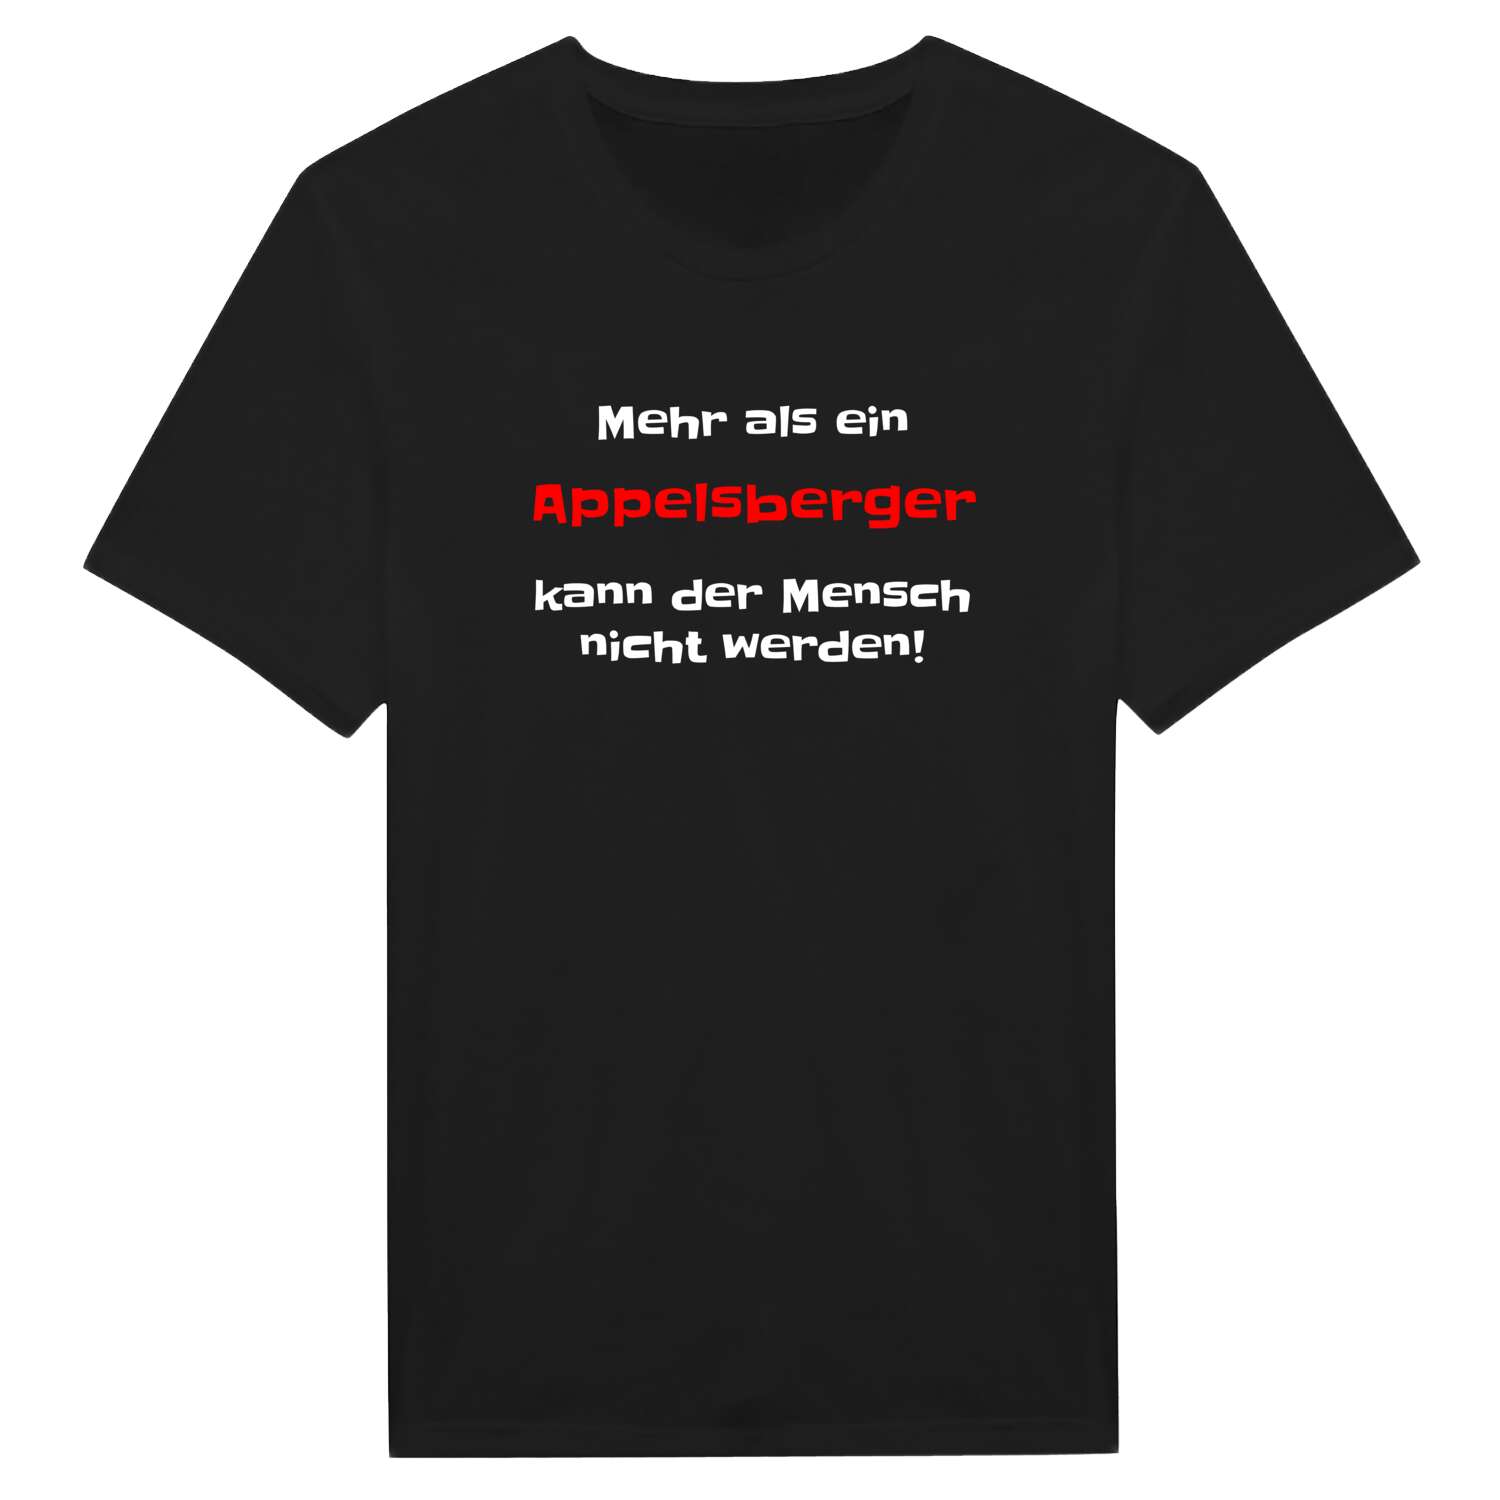 Appelsberg T-Shirt »Mehr als ein«